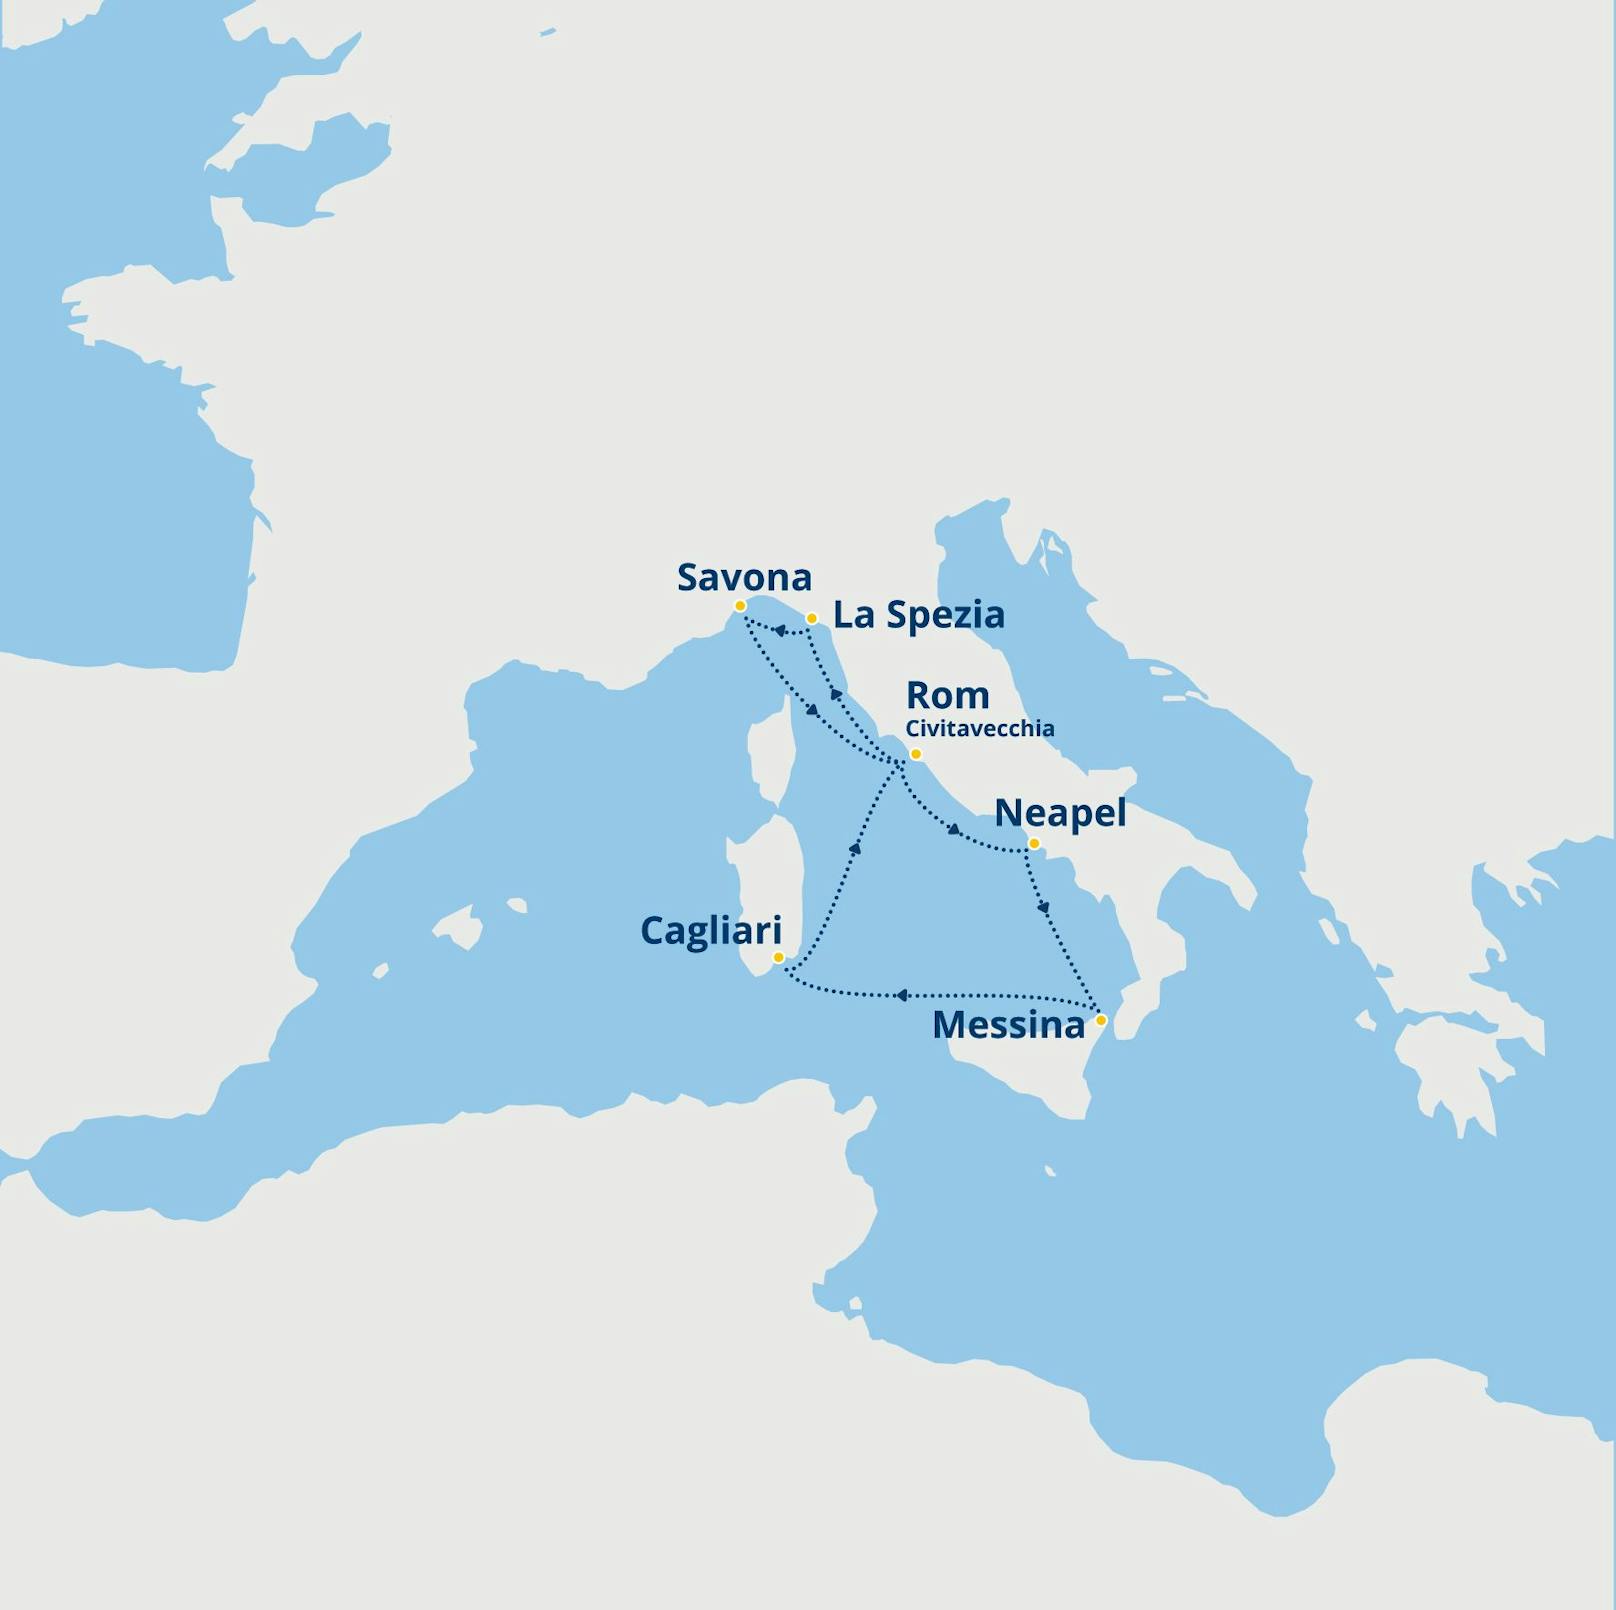 Mit dem Flaggschiff Costa Smeralda besuchen Sie in acht Tagen einige der schönsten italienischen Städte: Die Reiseroute führt Sie von Savona über Civitavecchia/Rom, Neapel, Messina, bis Cagliari und La Spezia.